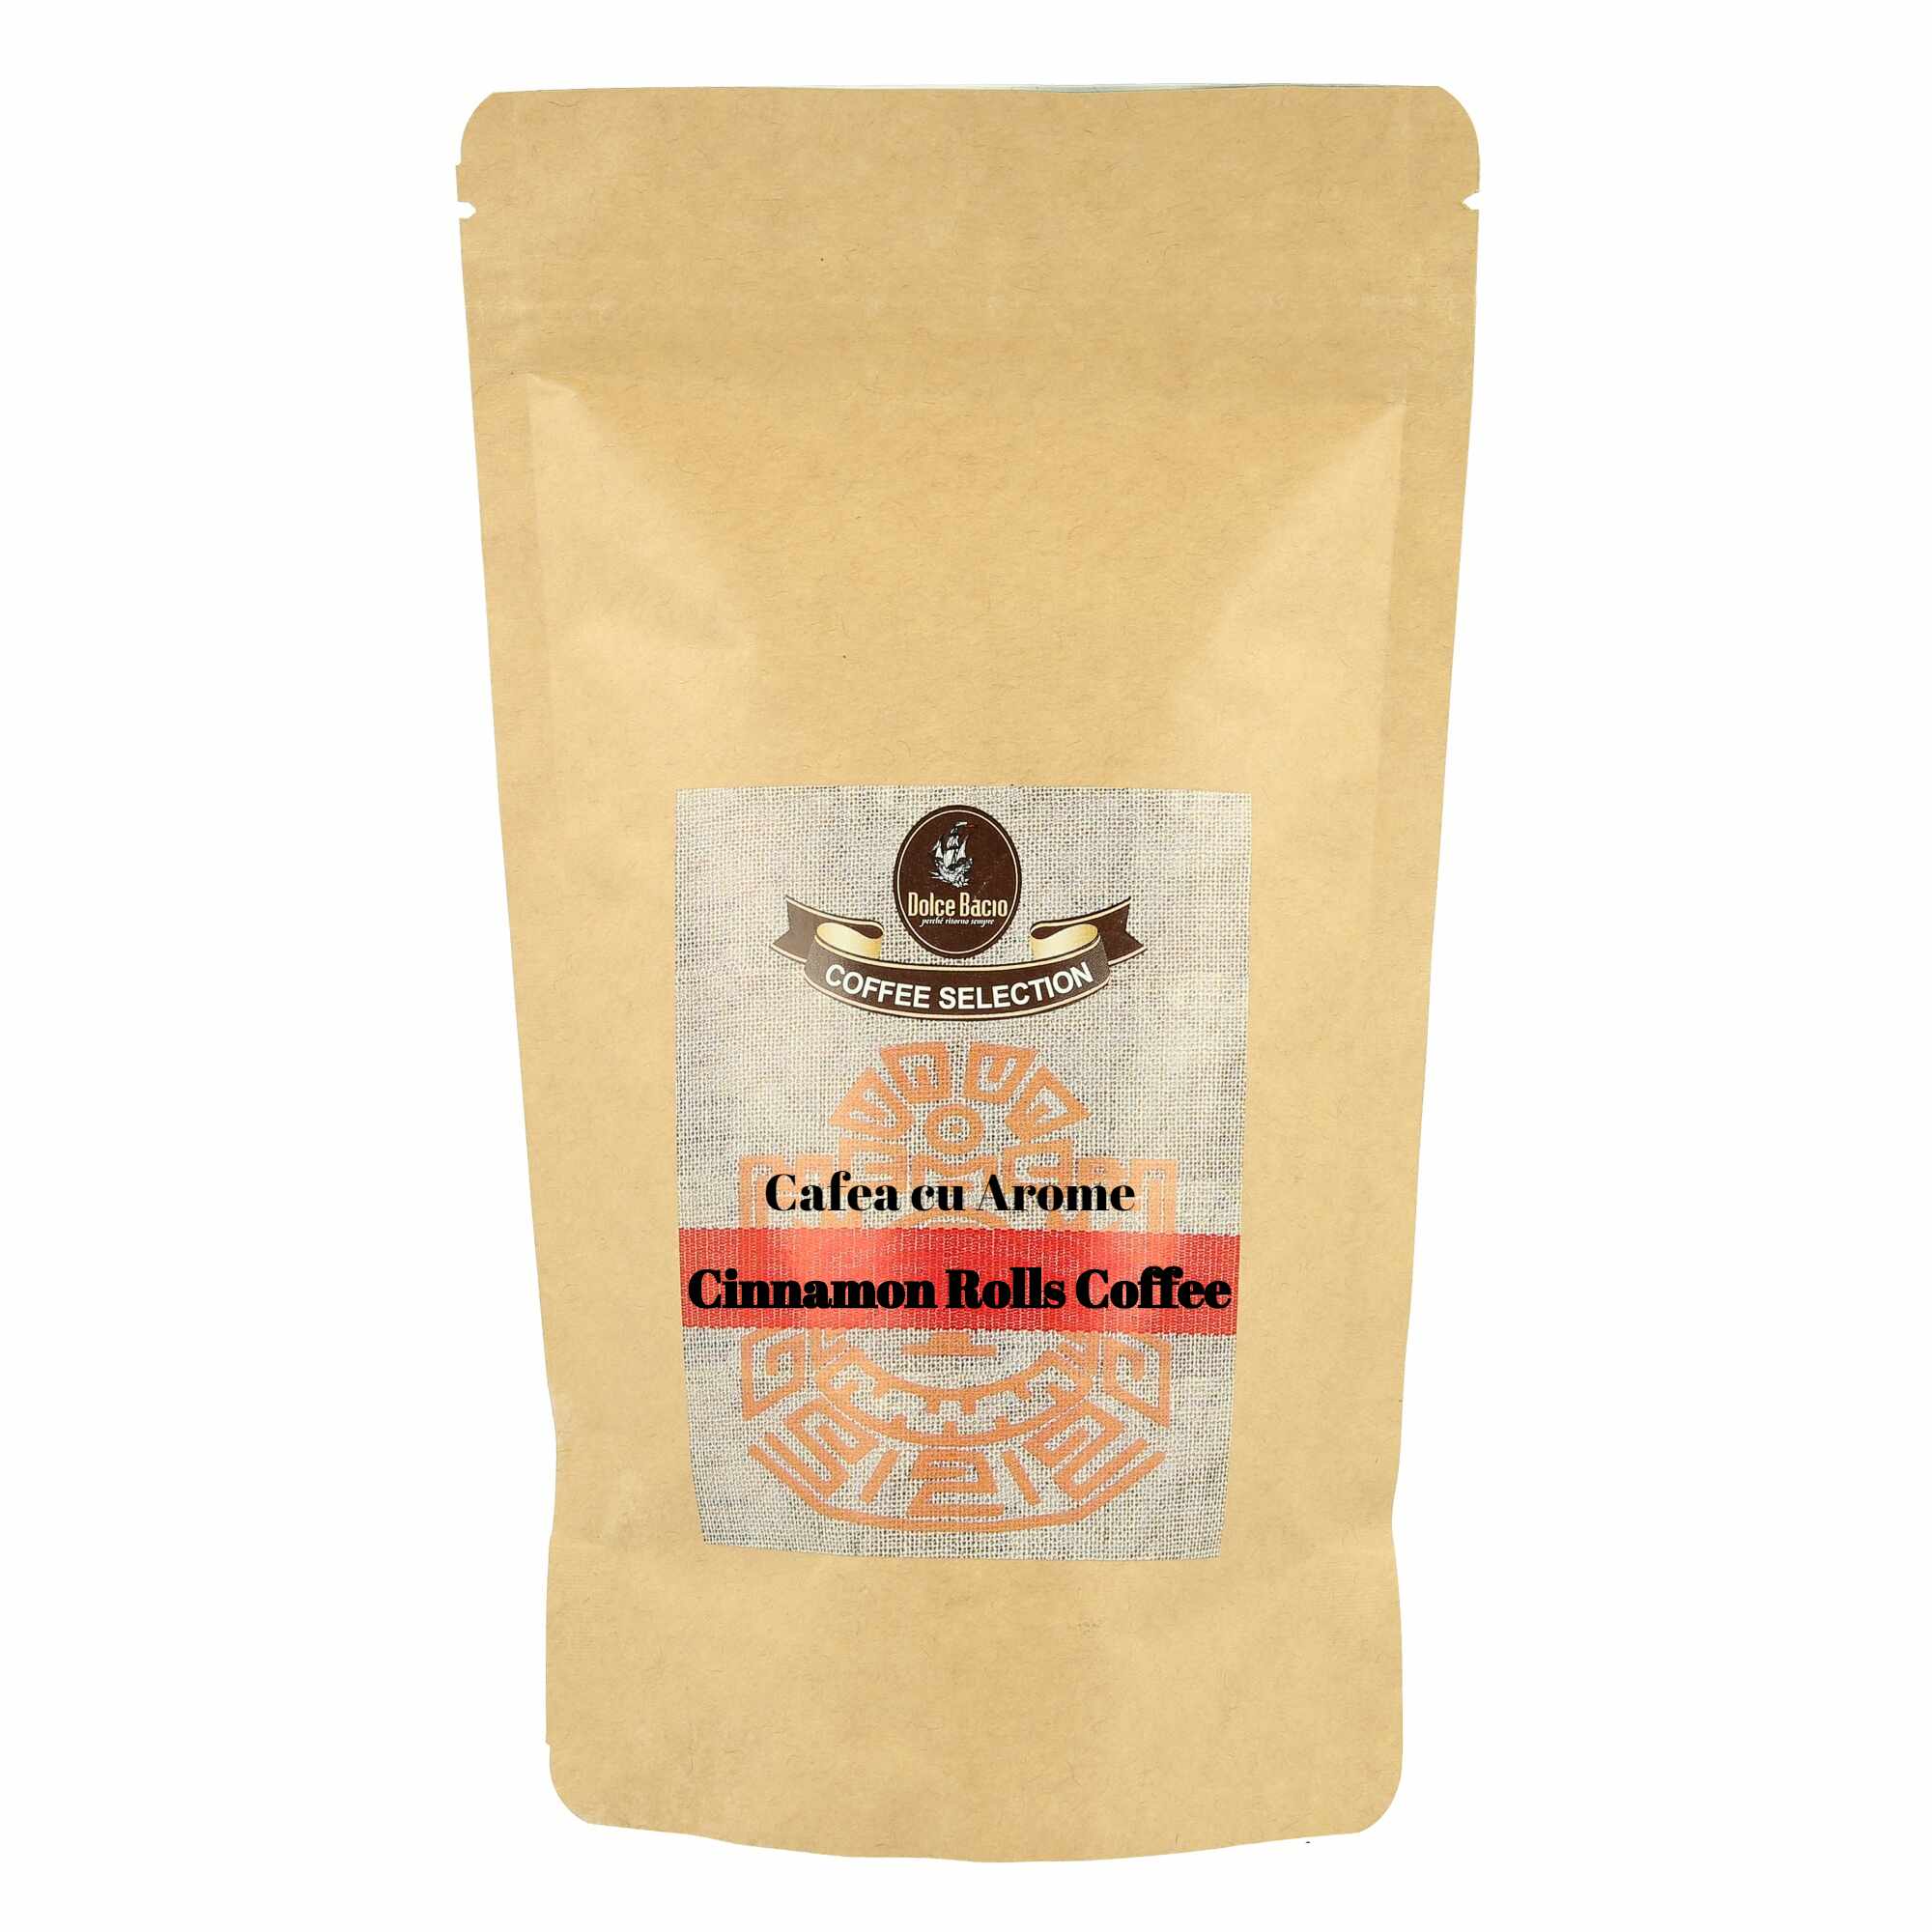 Cinnamon Rolls Coffee 100g french press